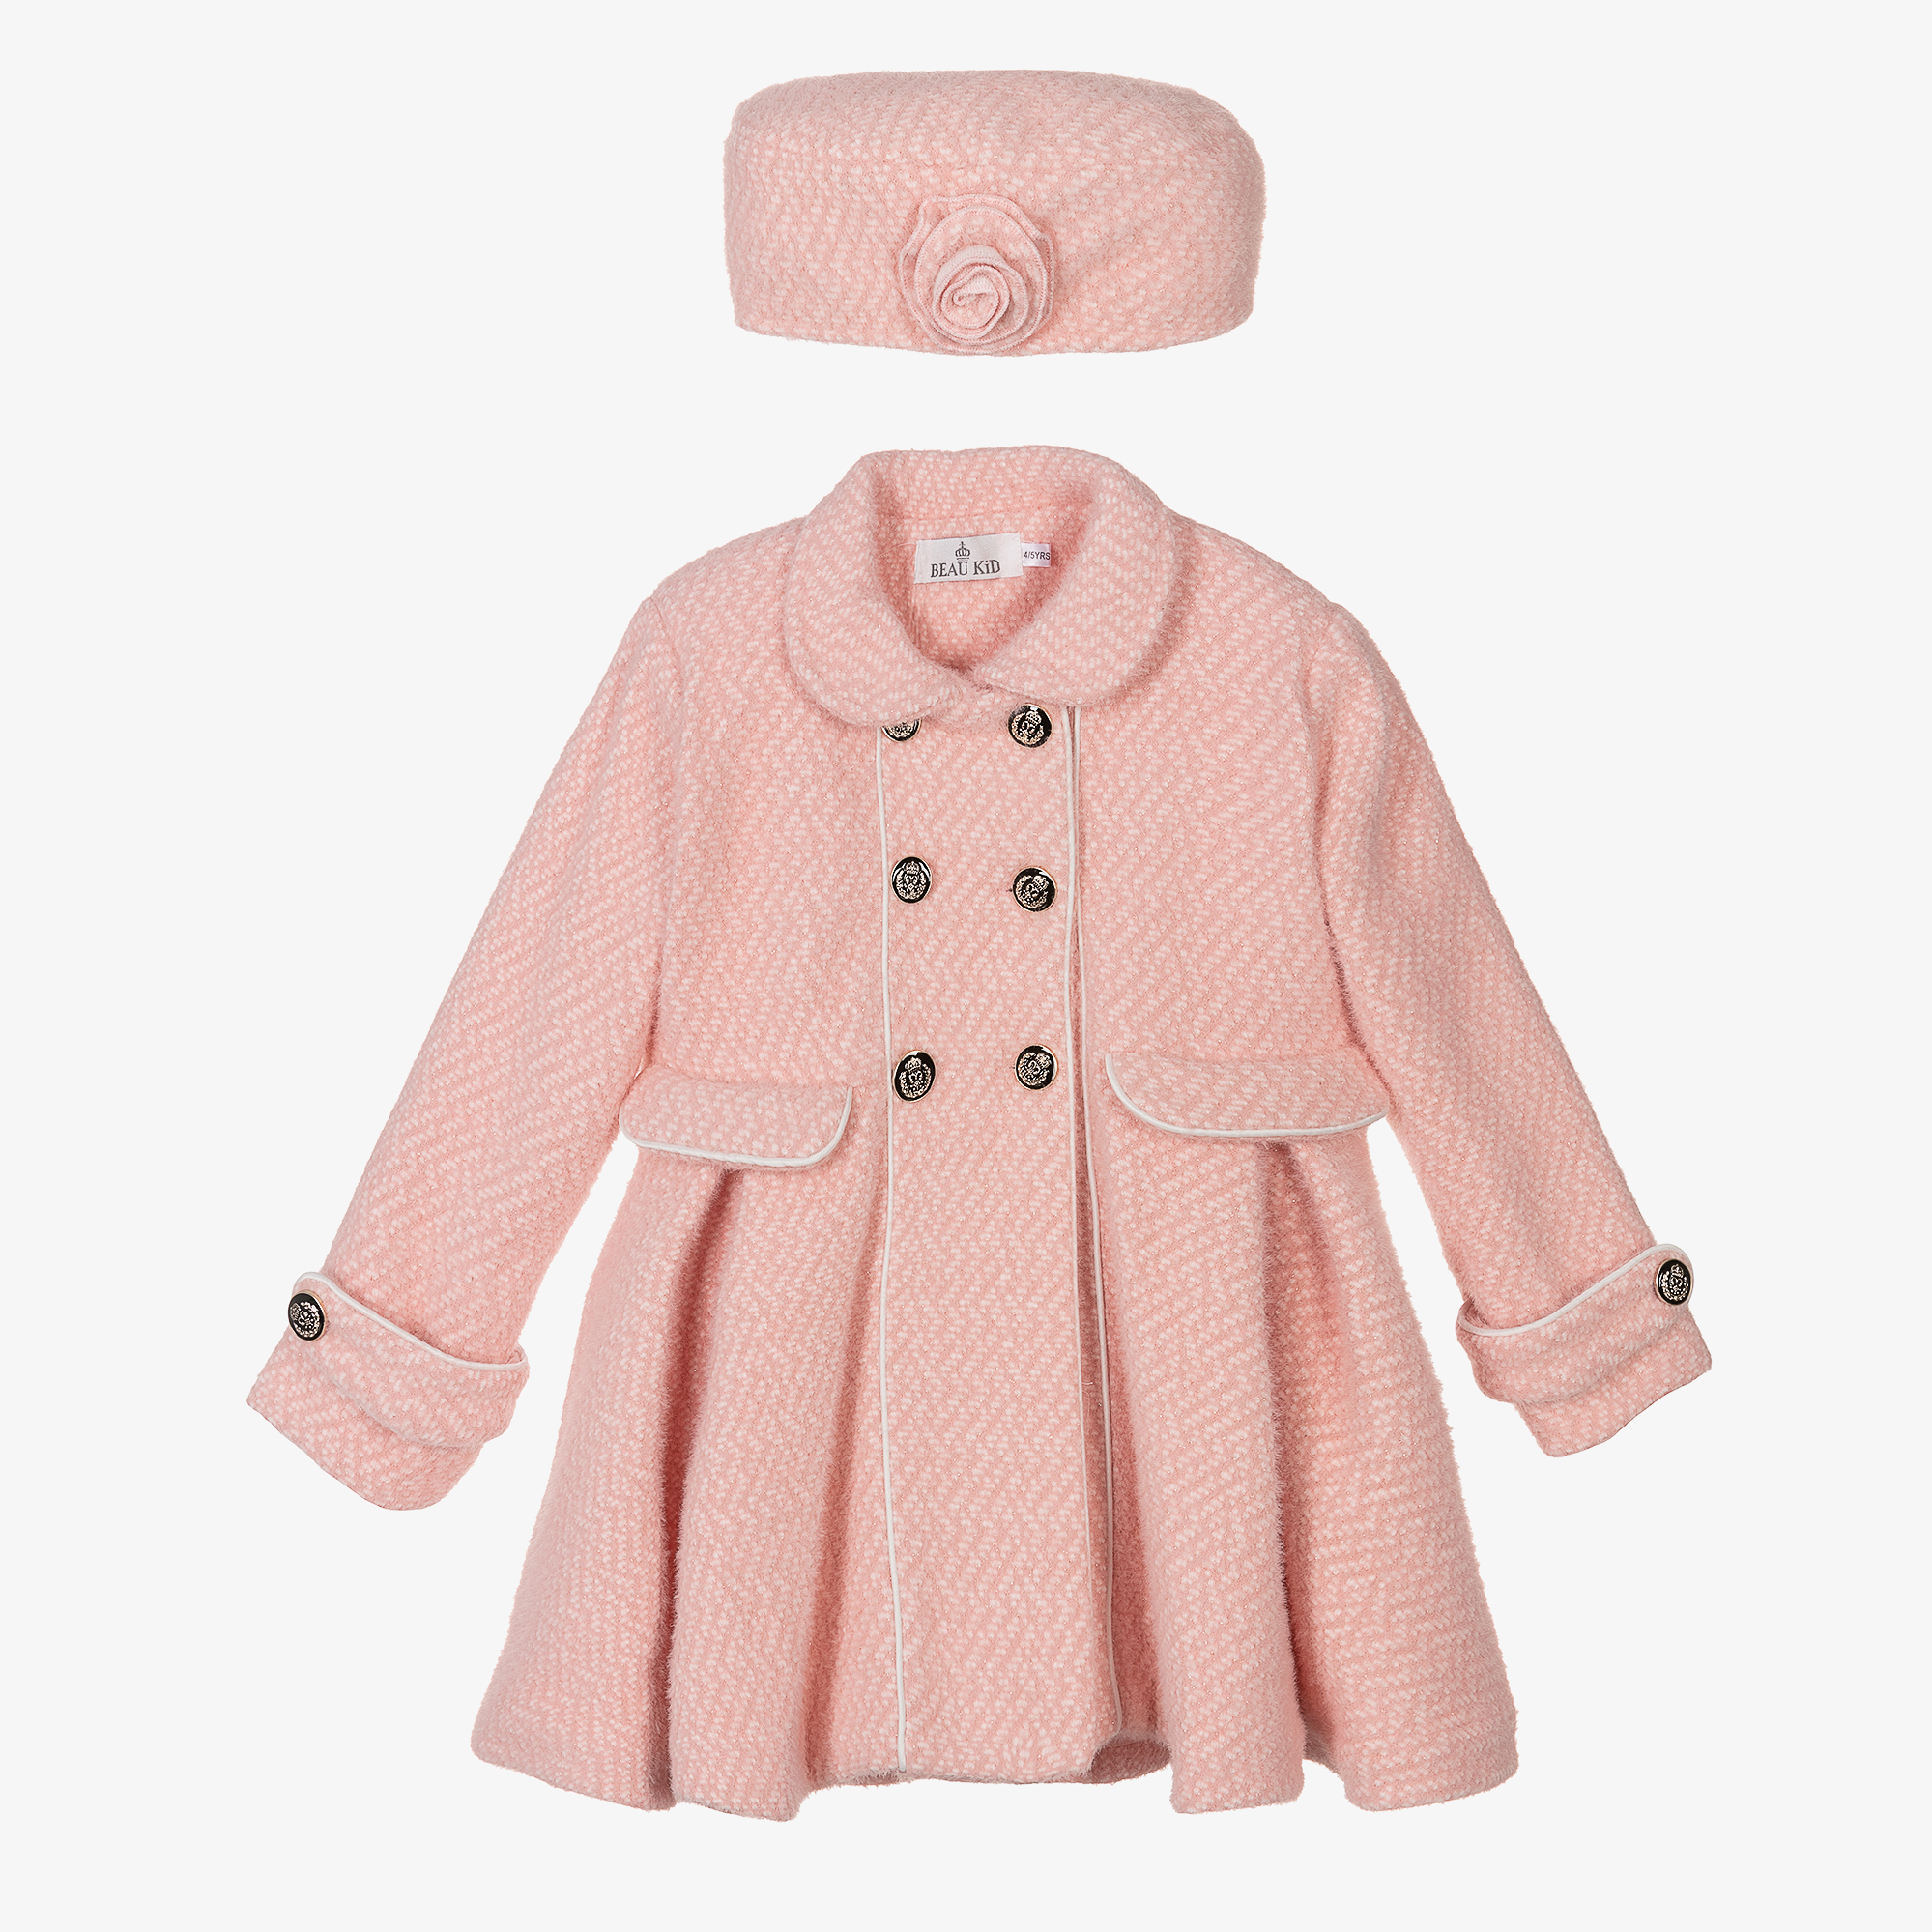 Beatrice & George Girls & Cashmere Monogram Hat Set Girls Kids 2-6 Year Pink Wool by Childrensalon